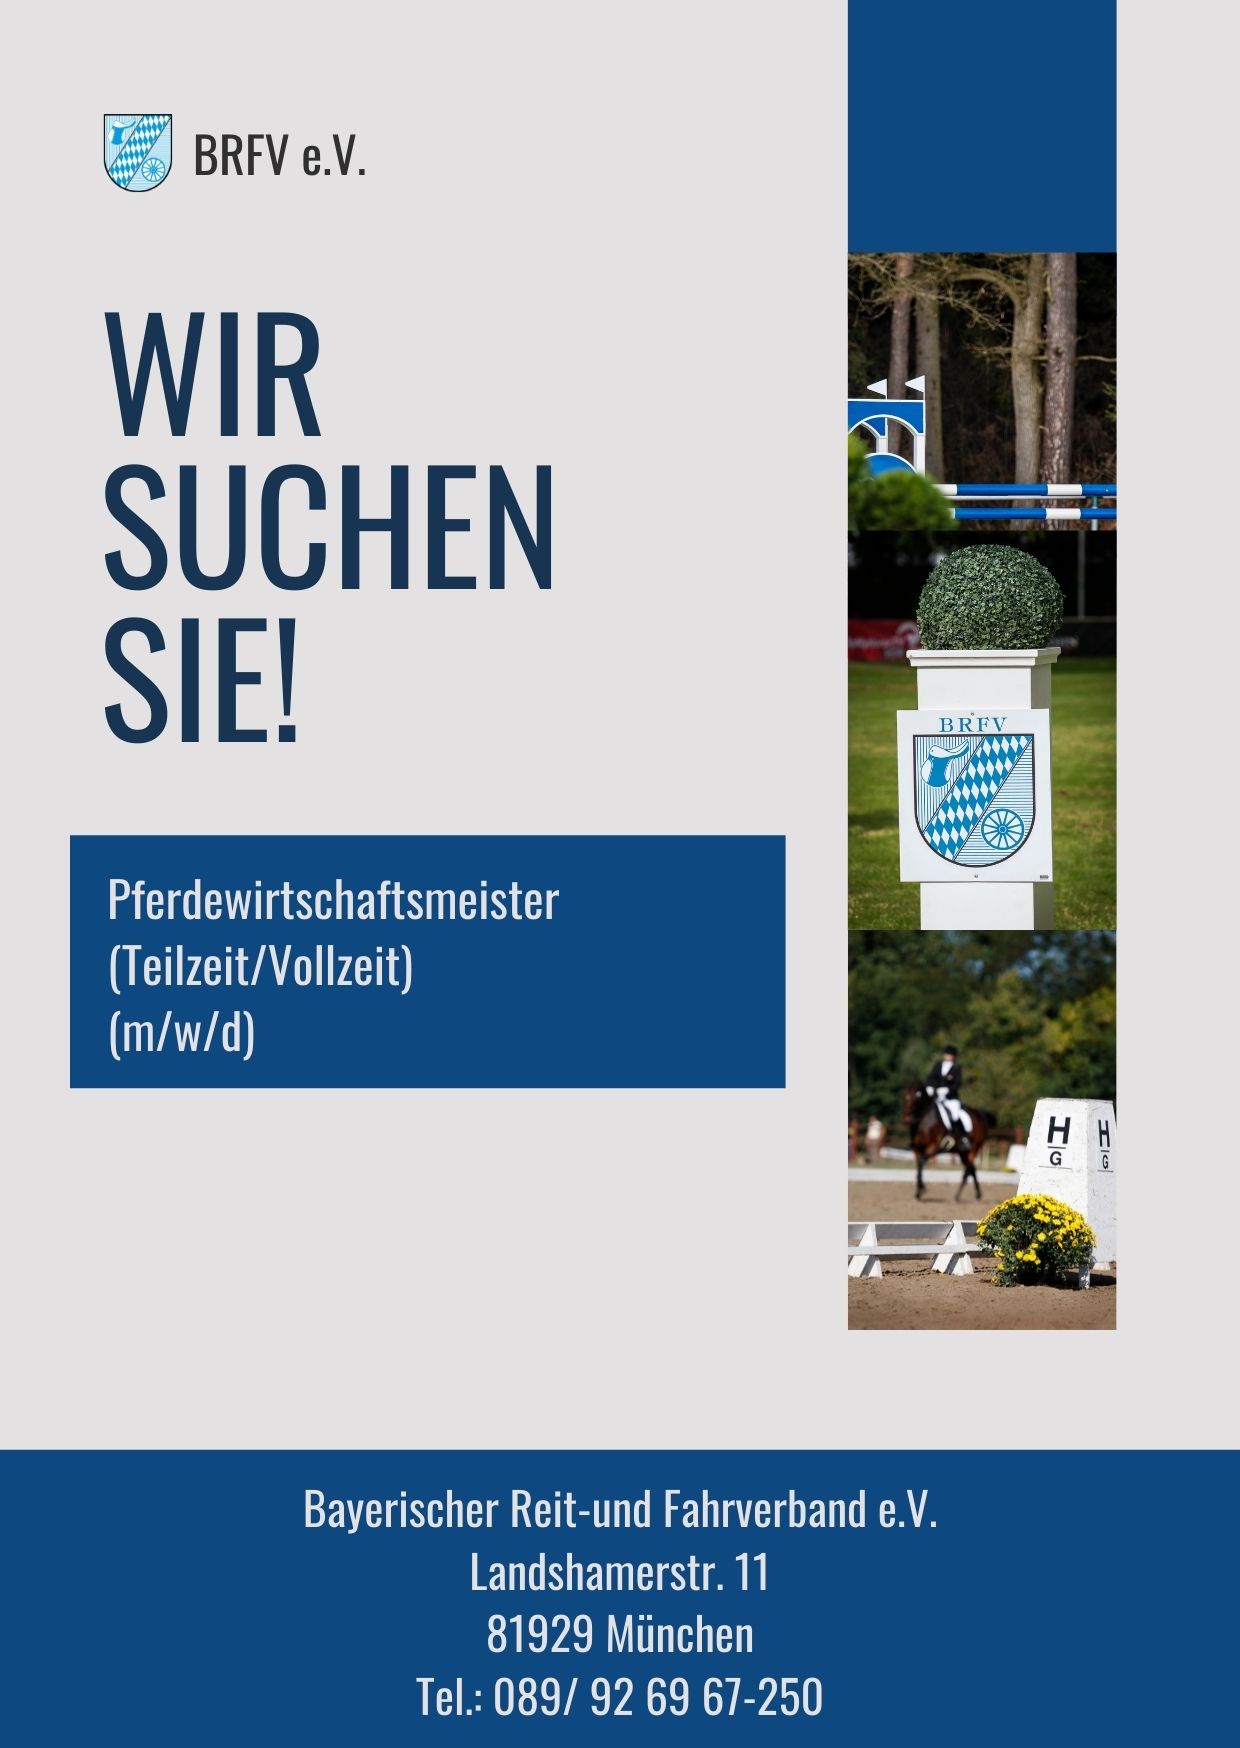 Bayerischer Reit-und Fahrverband e.V.